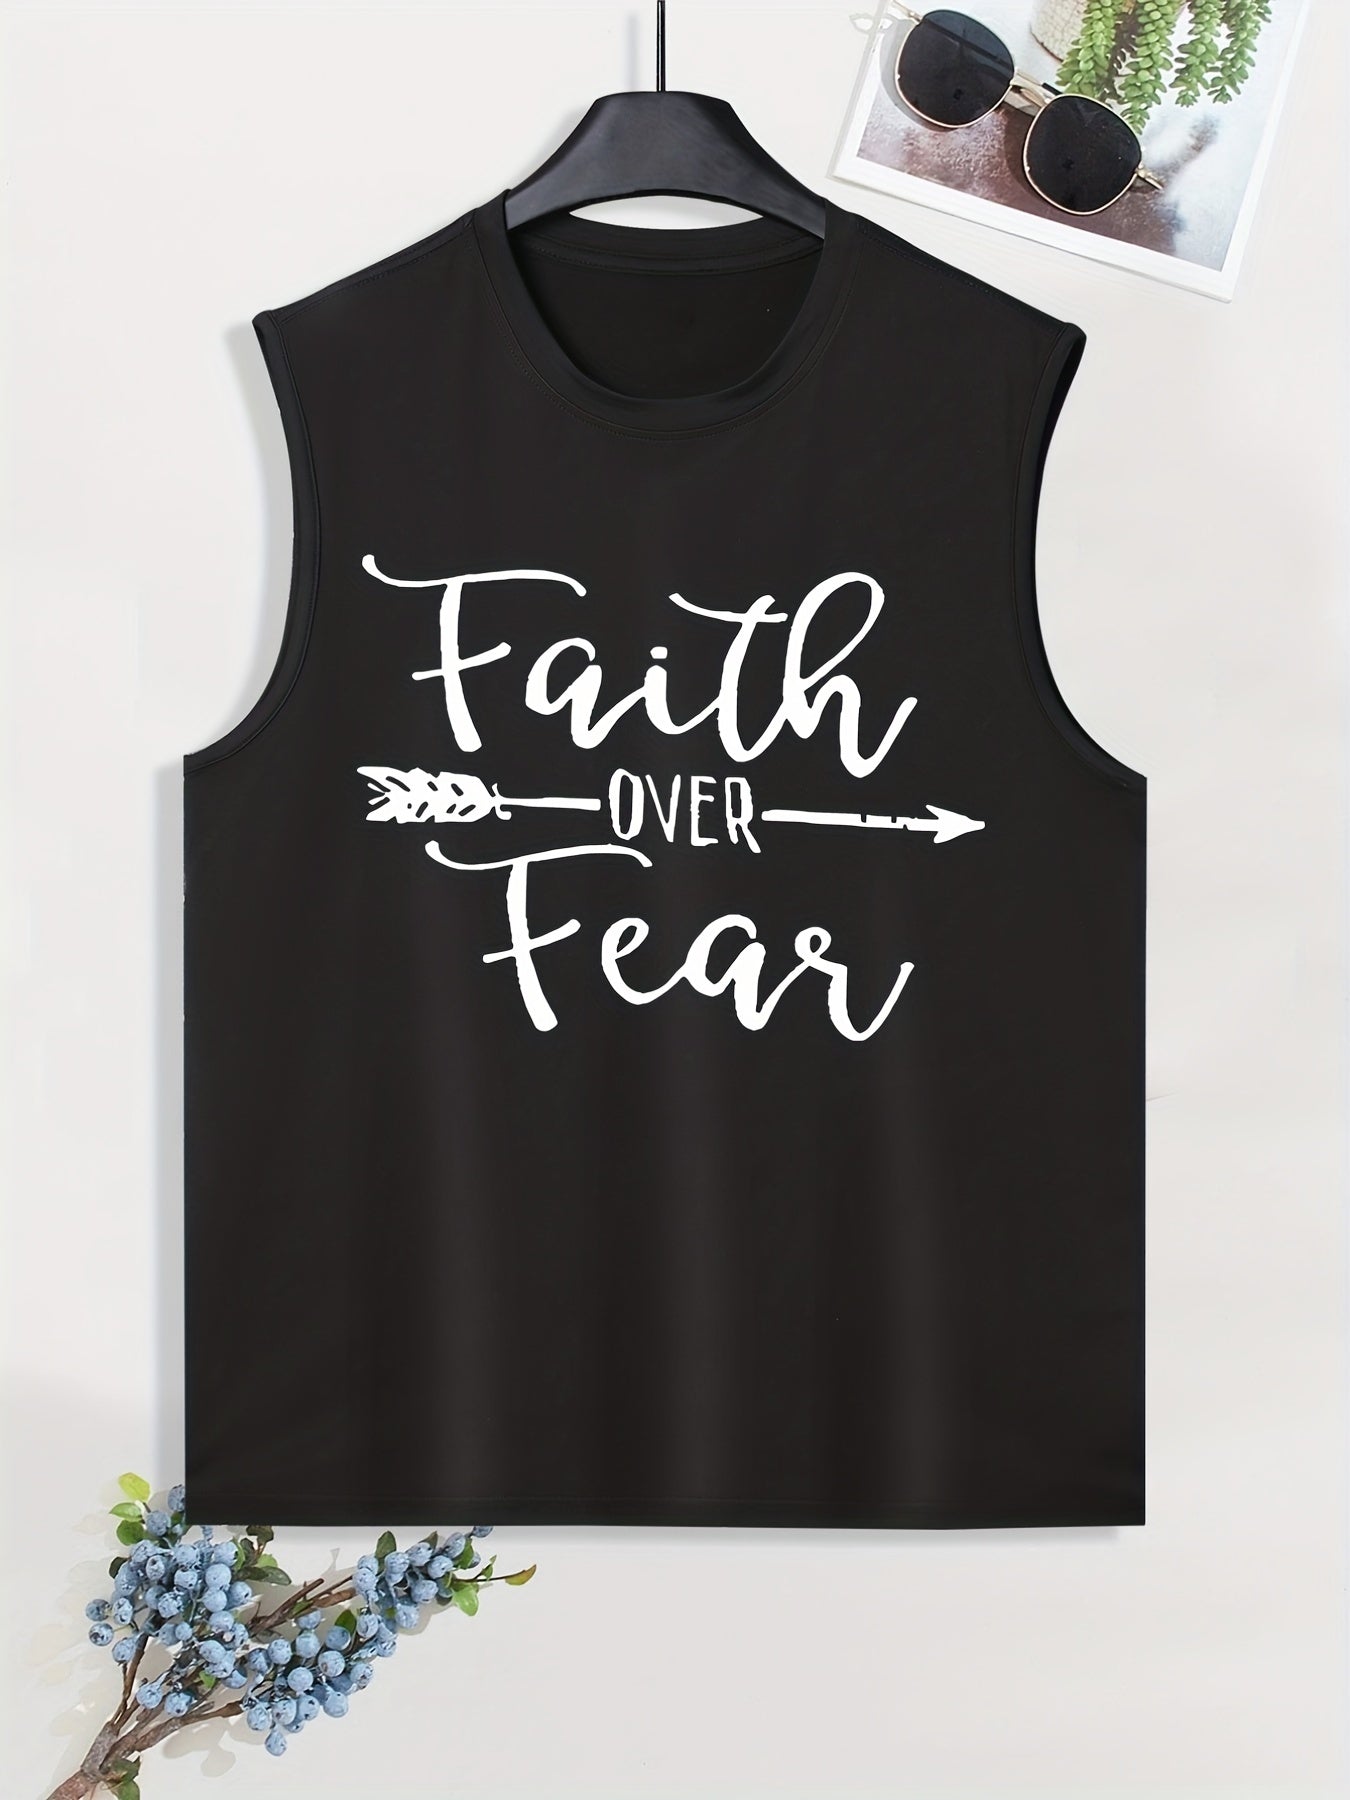 Faith Over Fear Men's Christian Tank Top claimedbygoddesigns